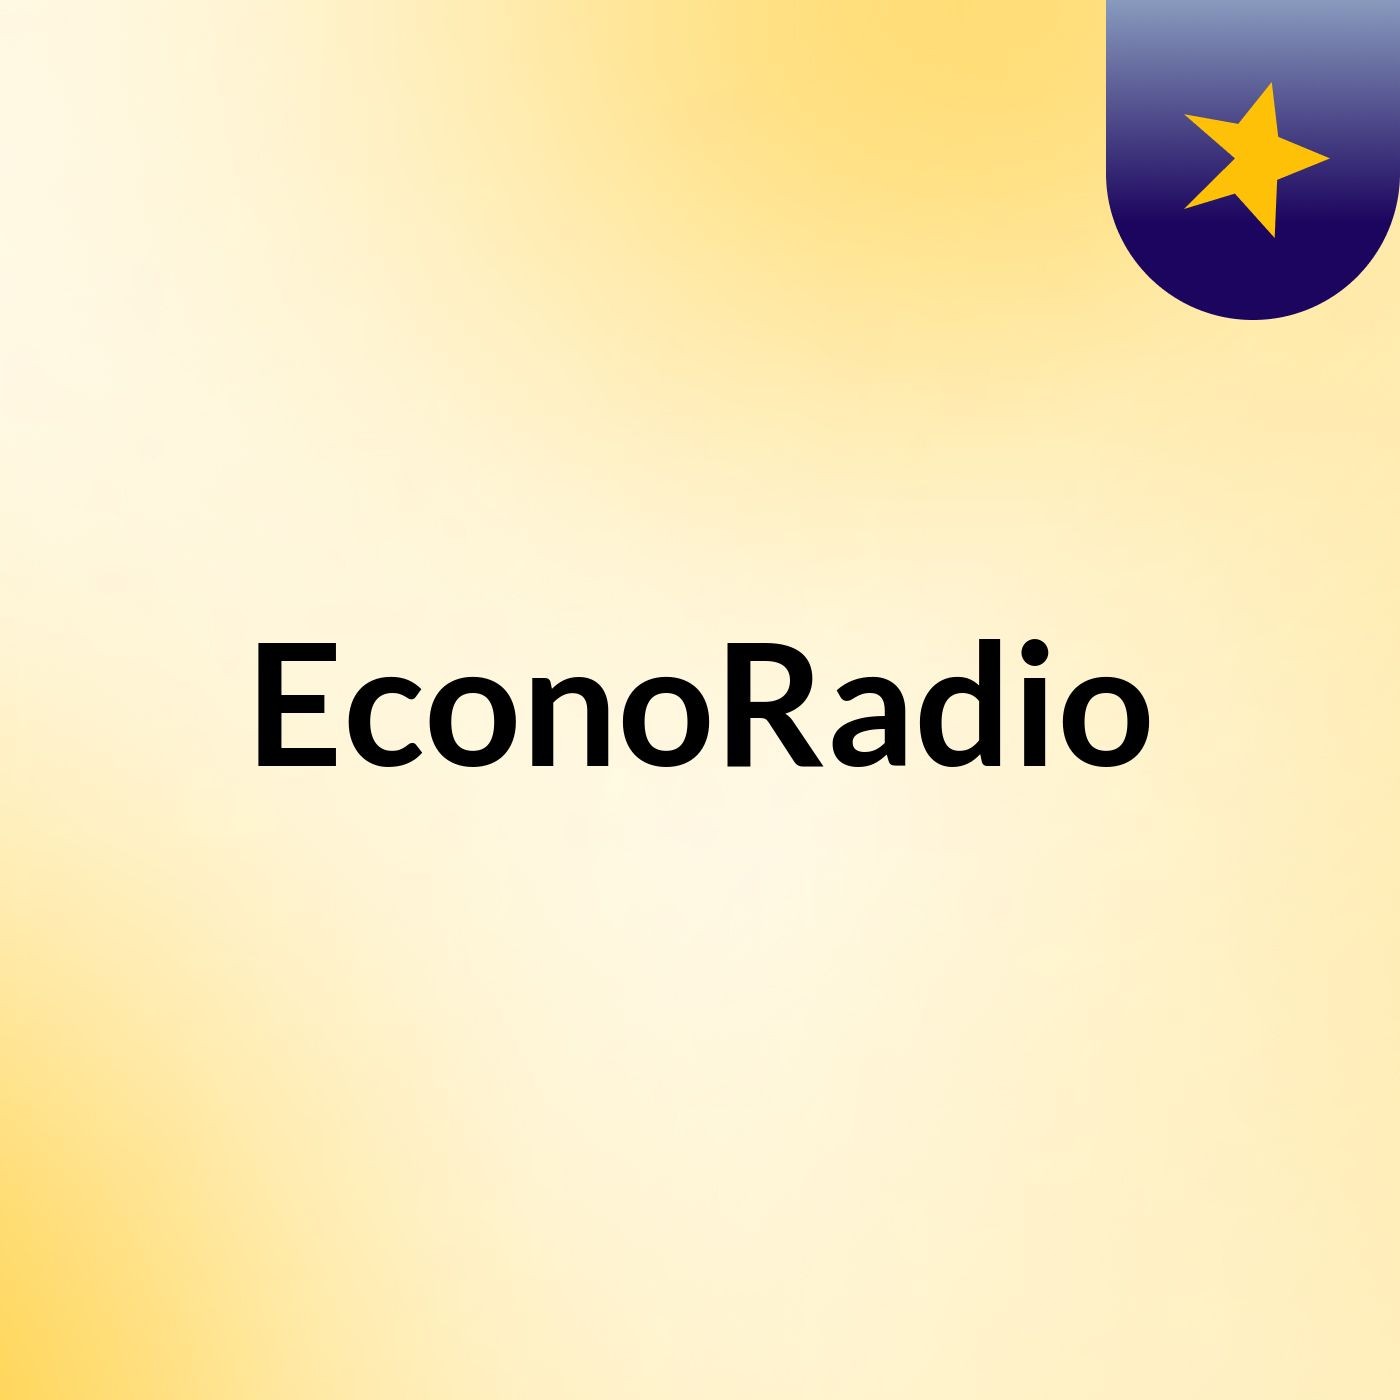 EconoRadio